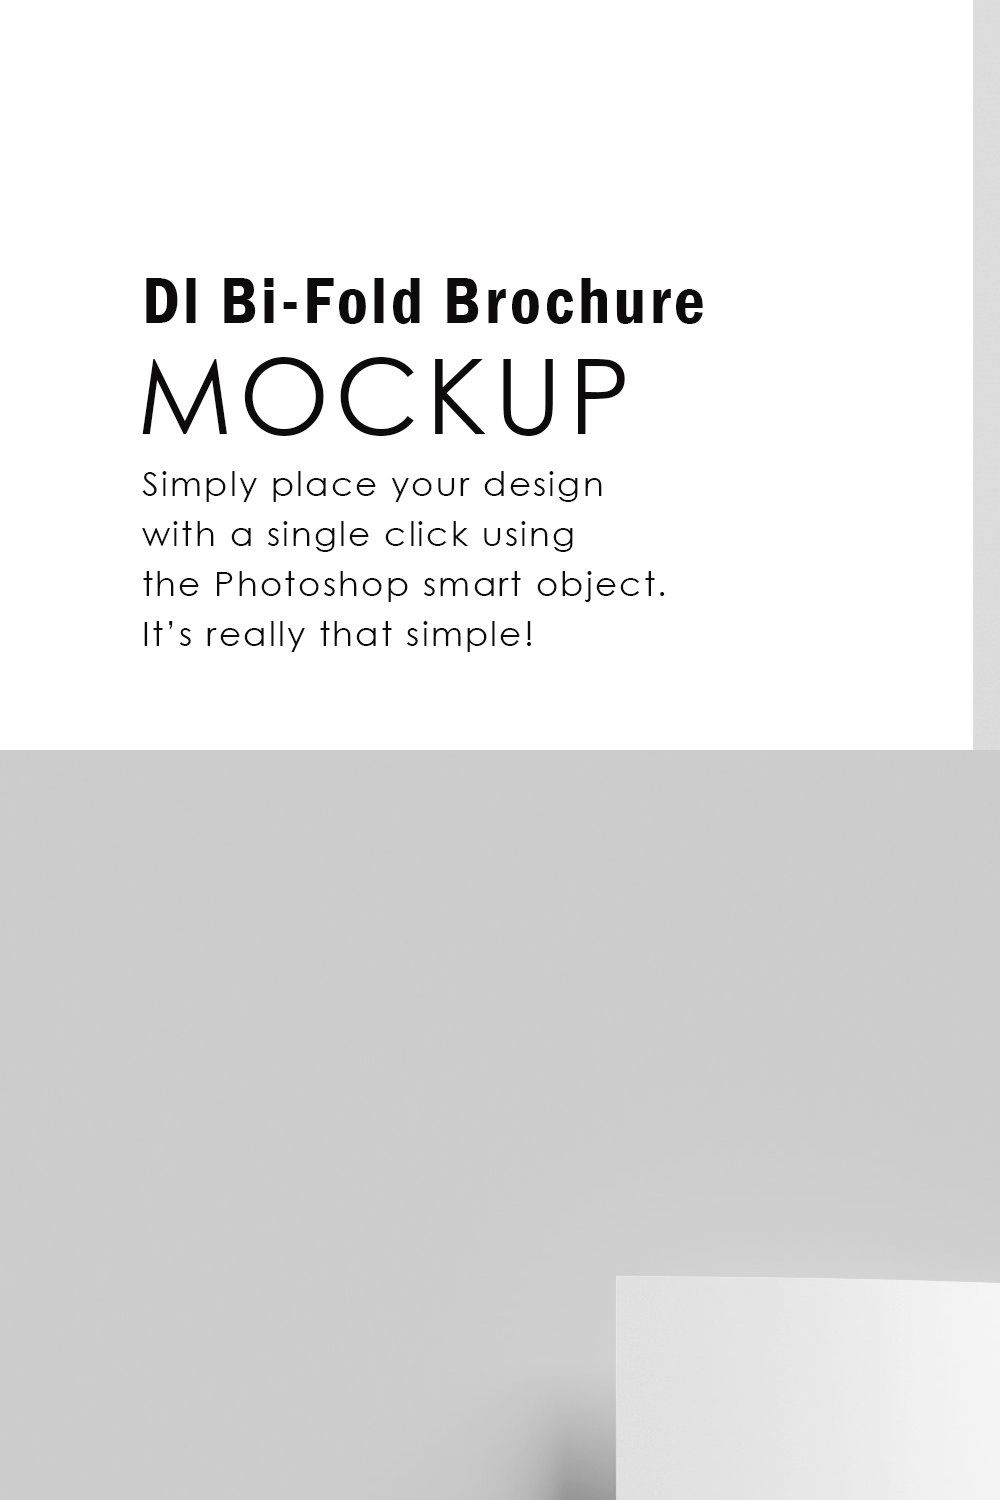 6 Dl Bi-Fold Brochure Mockup pinterest preview image.